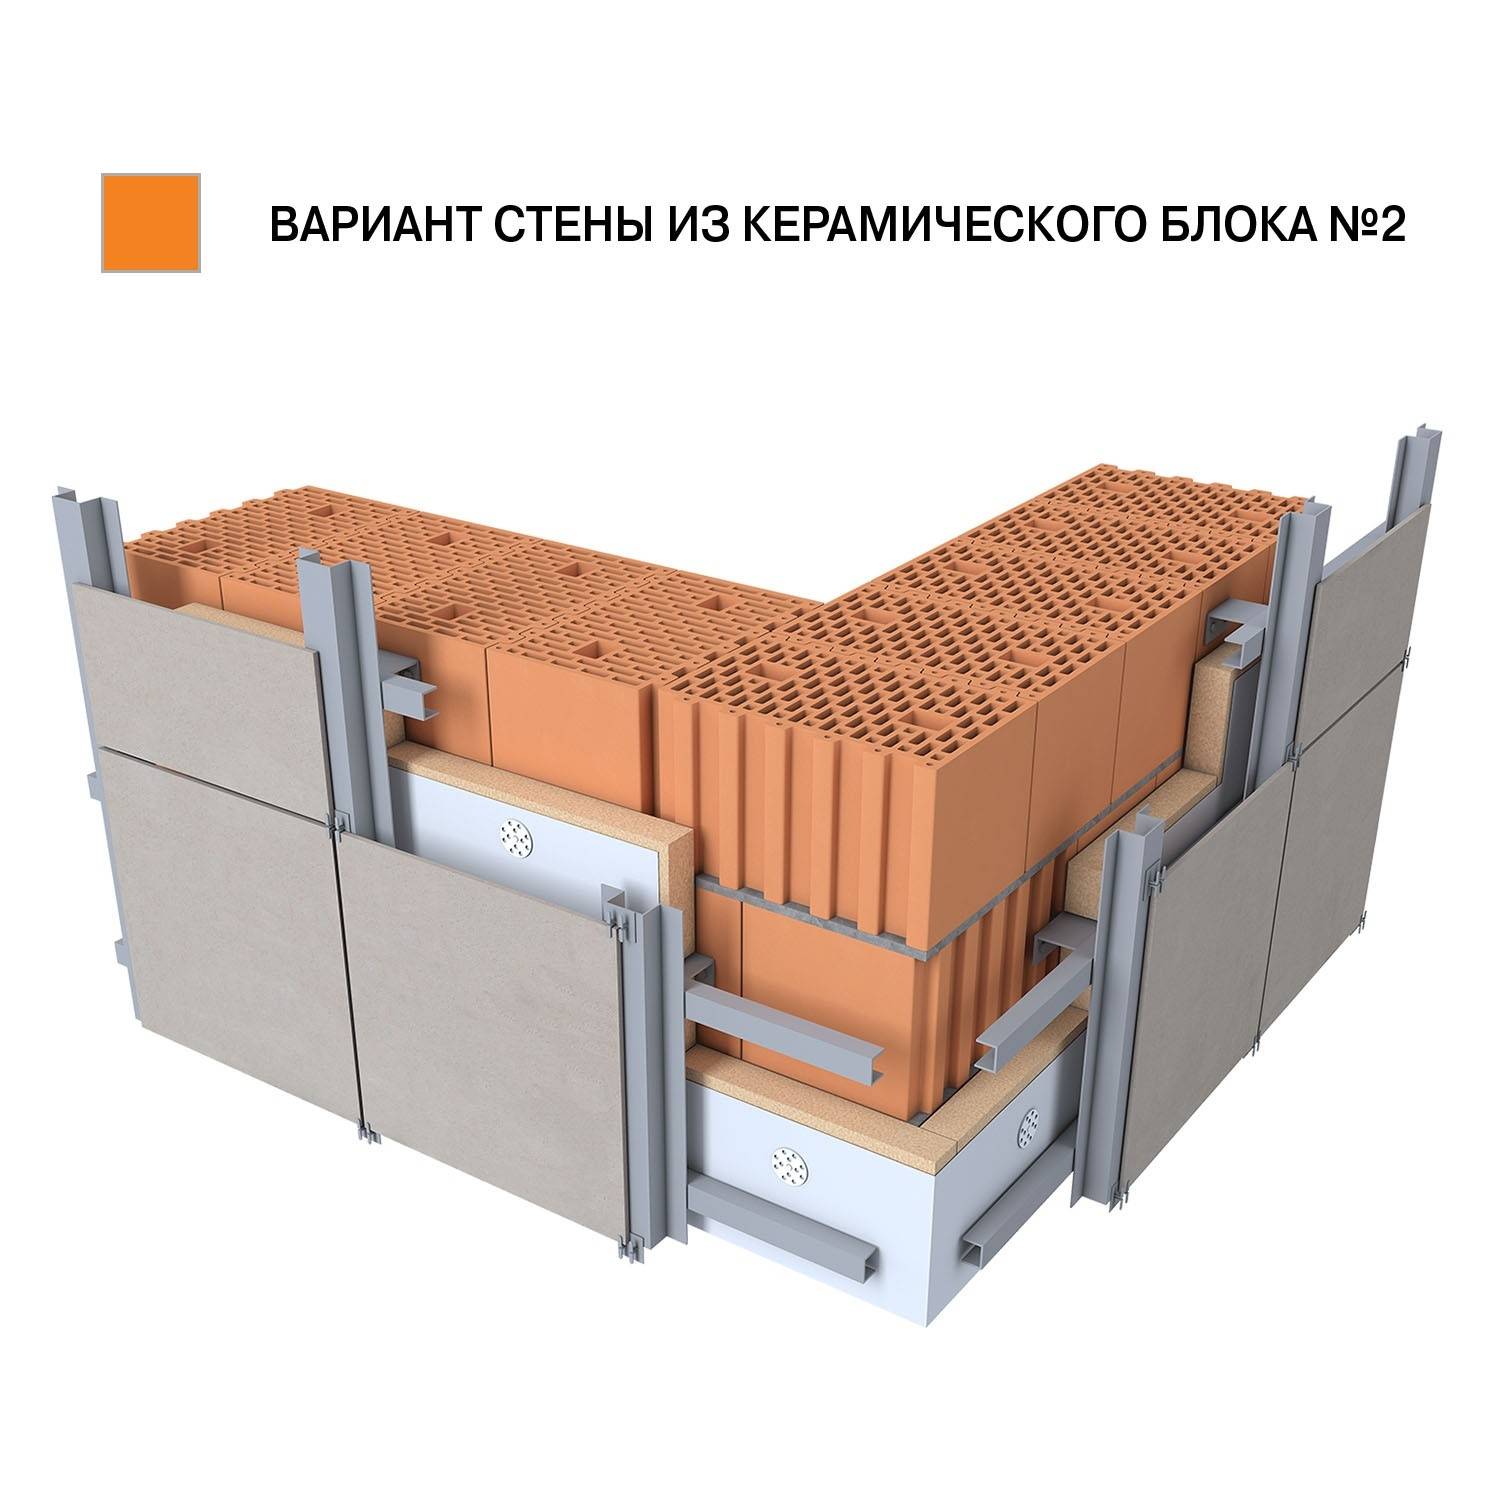 Керамические блоки, как популярный строительный материал